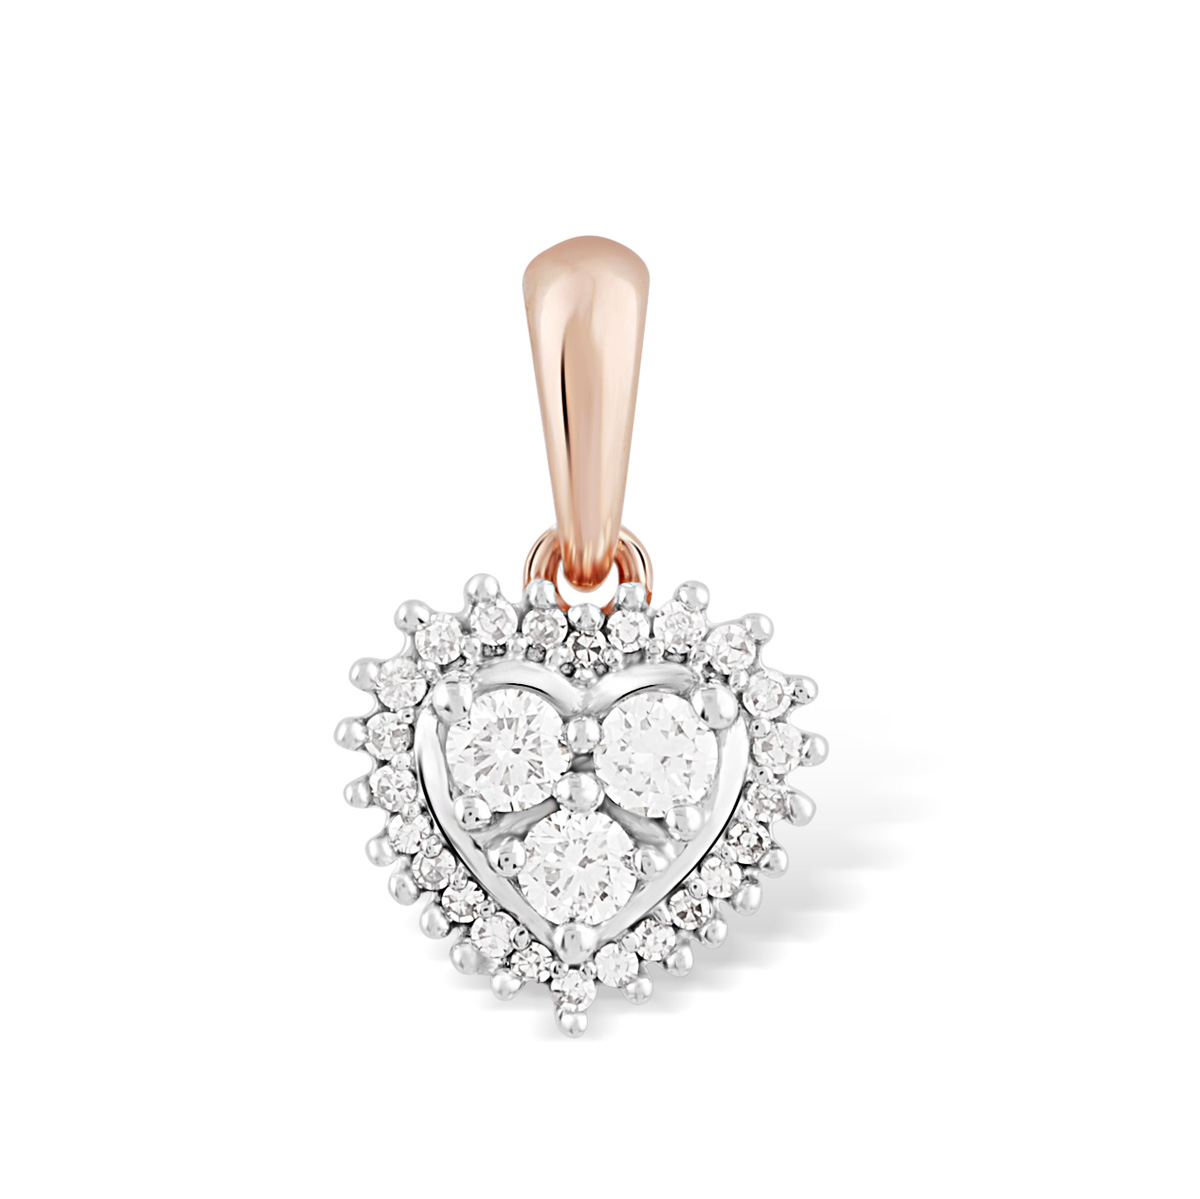 FI52574SWD4RZ
14 rose gold diamond pendant